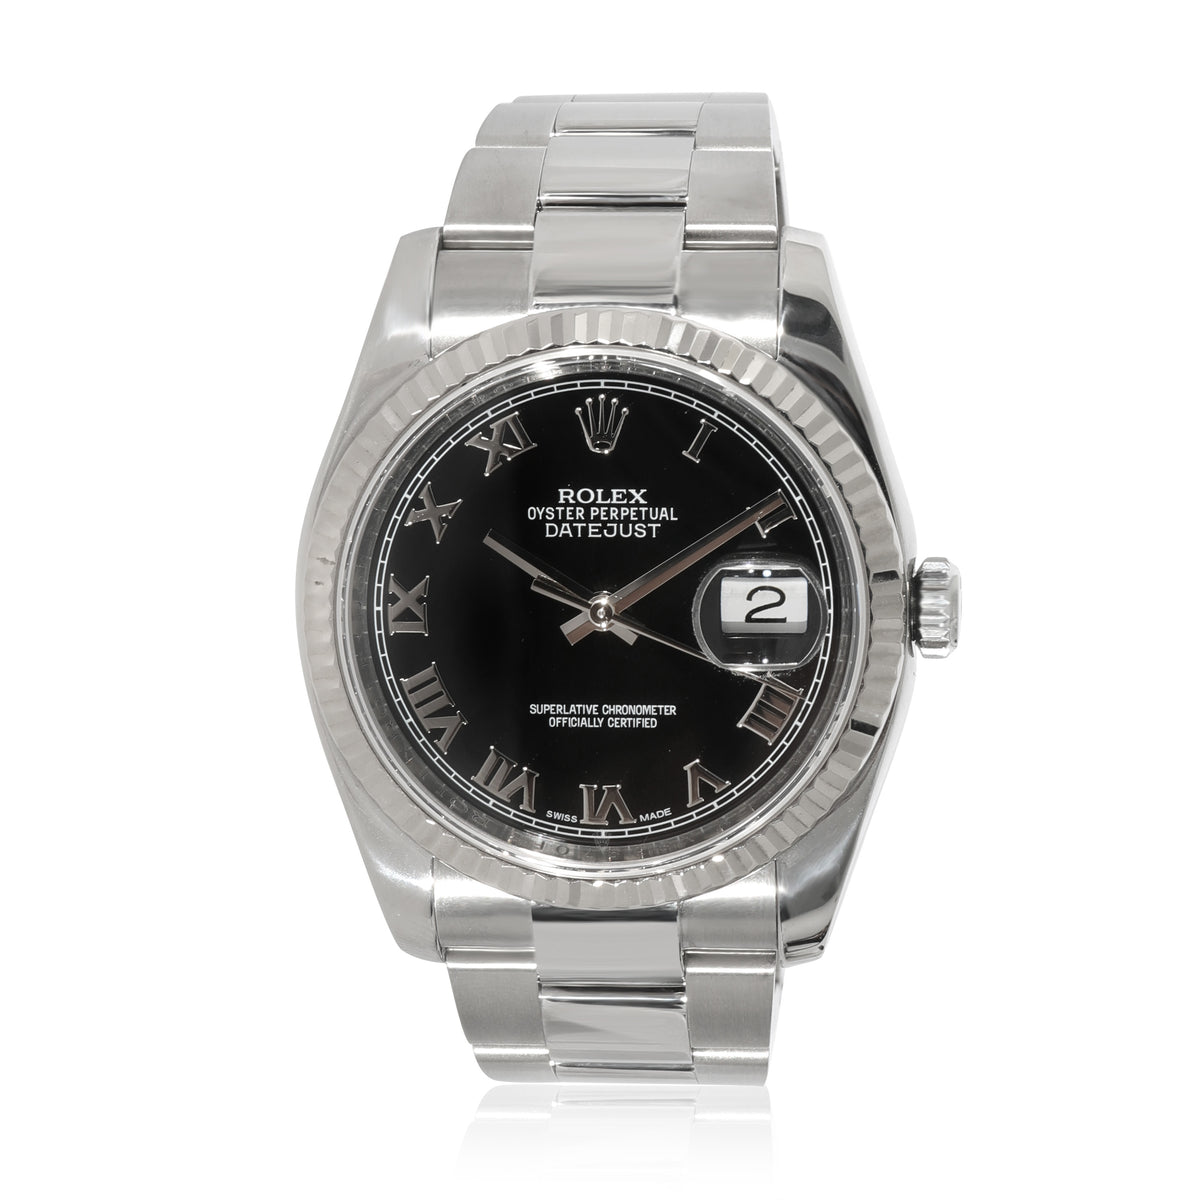 Rolex Datejust 126234 Unisex Watch in 18kt Stainless Steel/White Gold